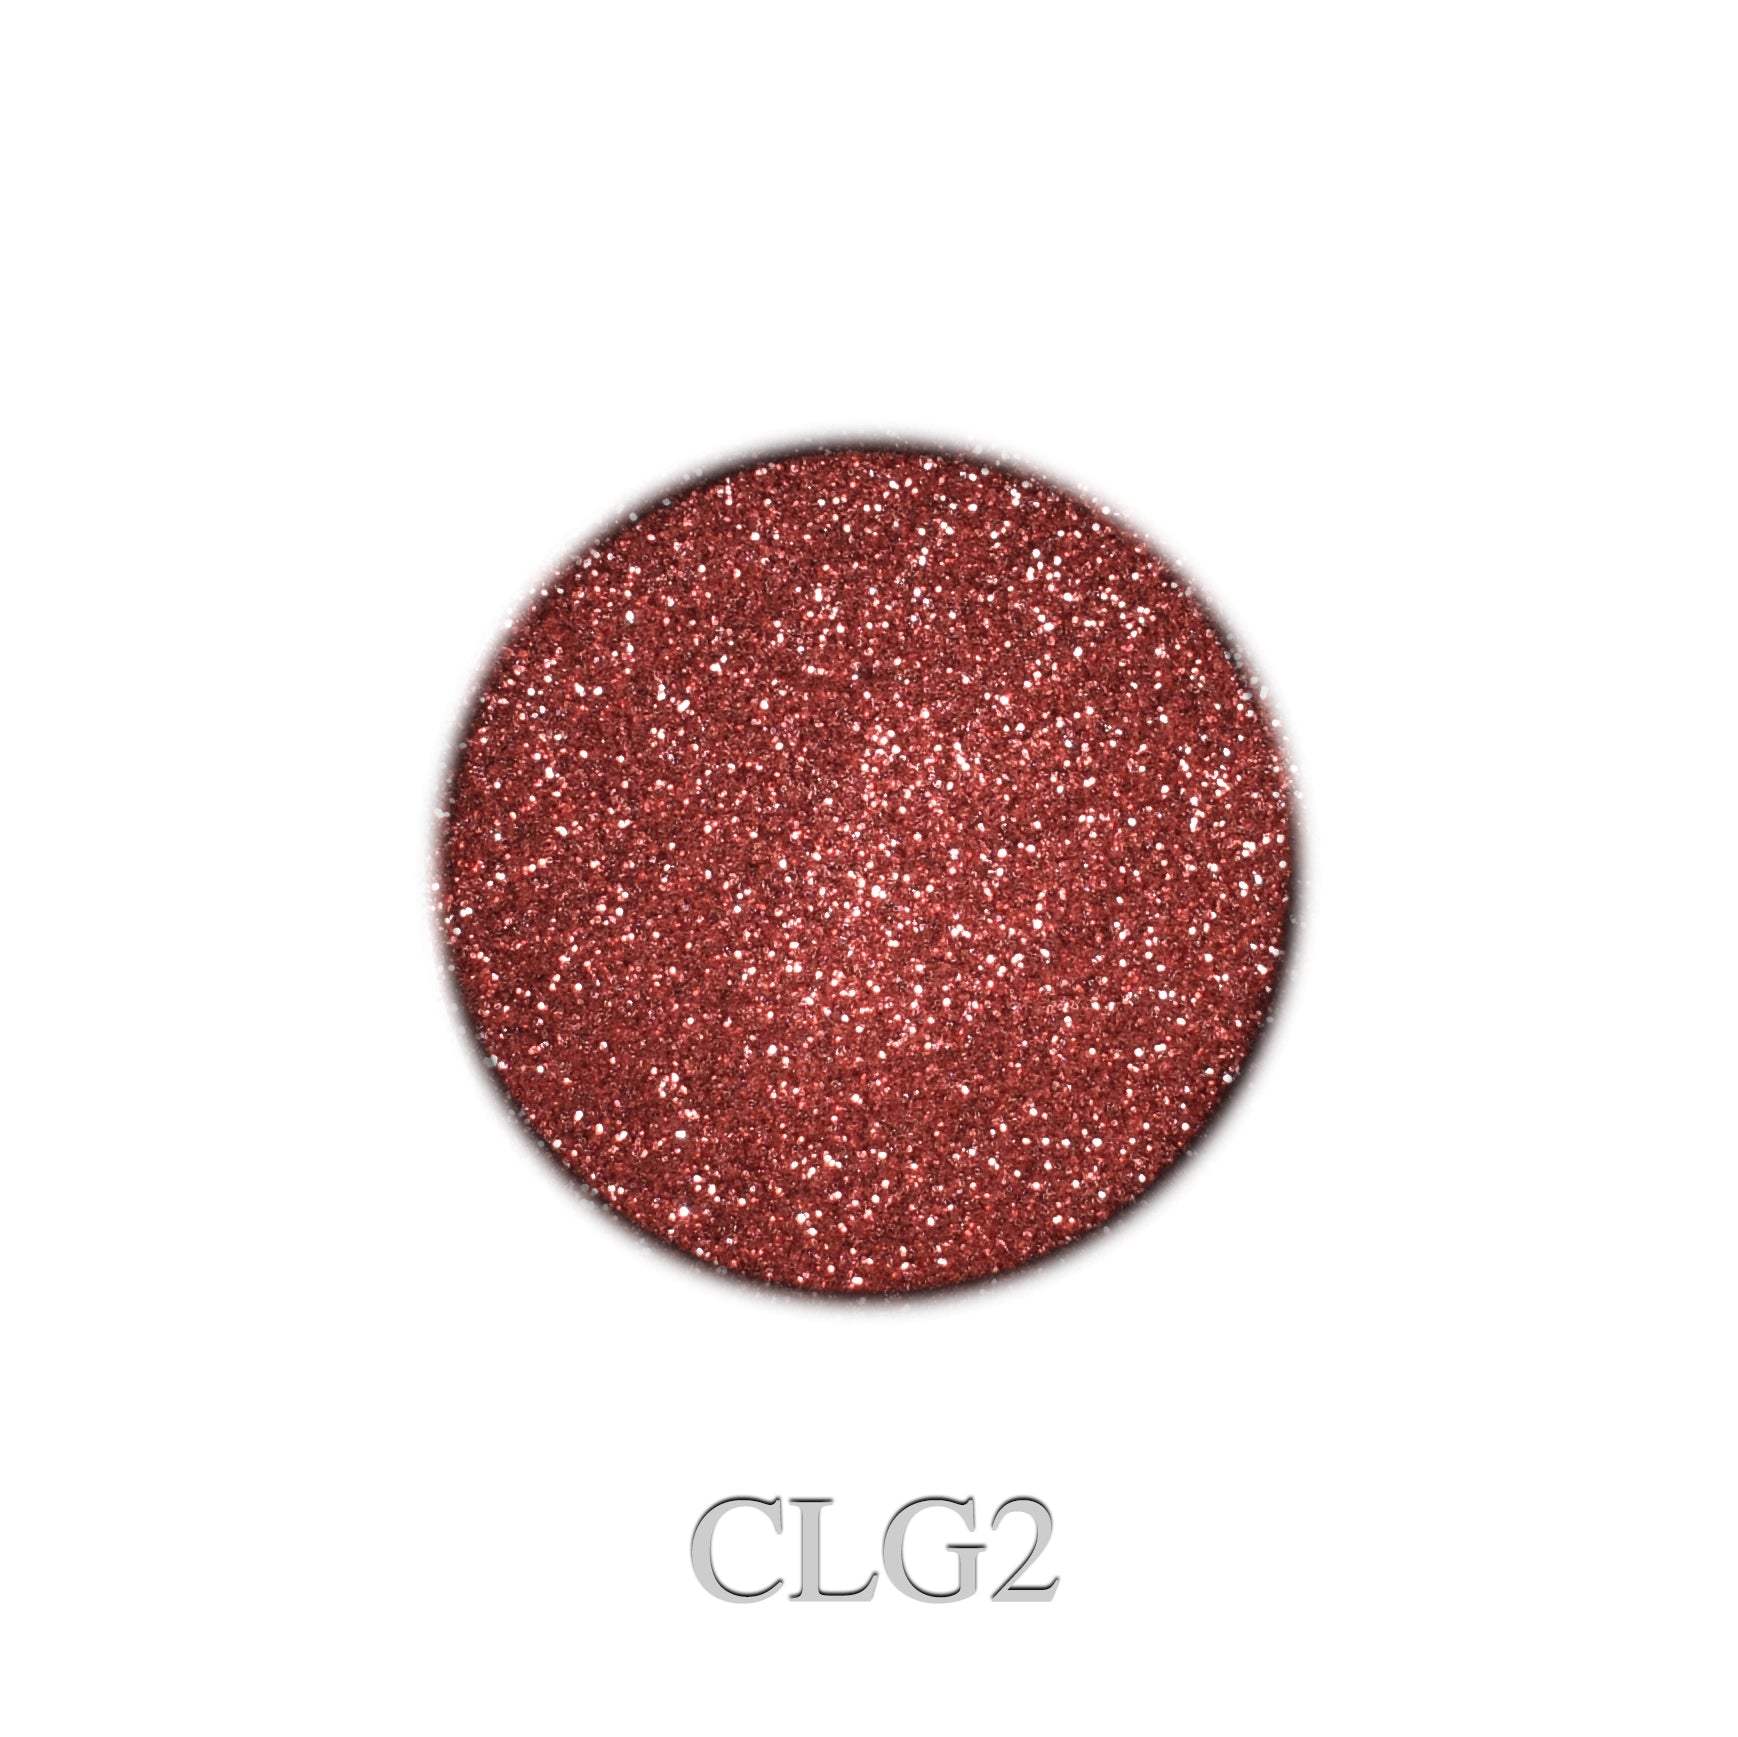 Classy Glitter CLG2